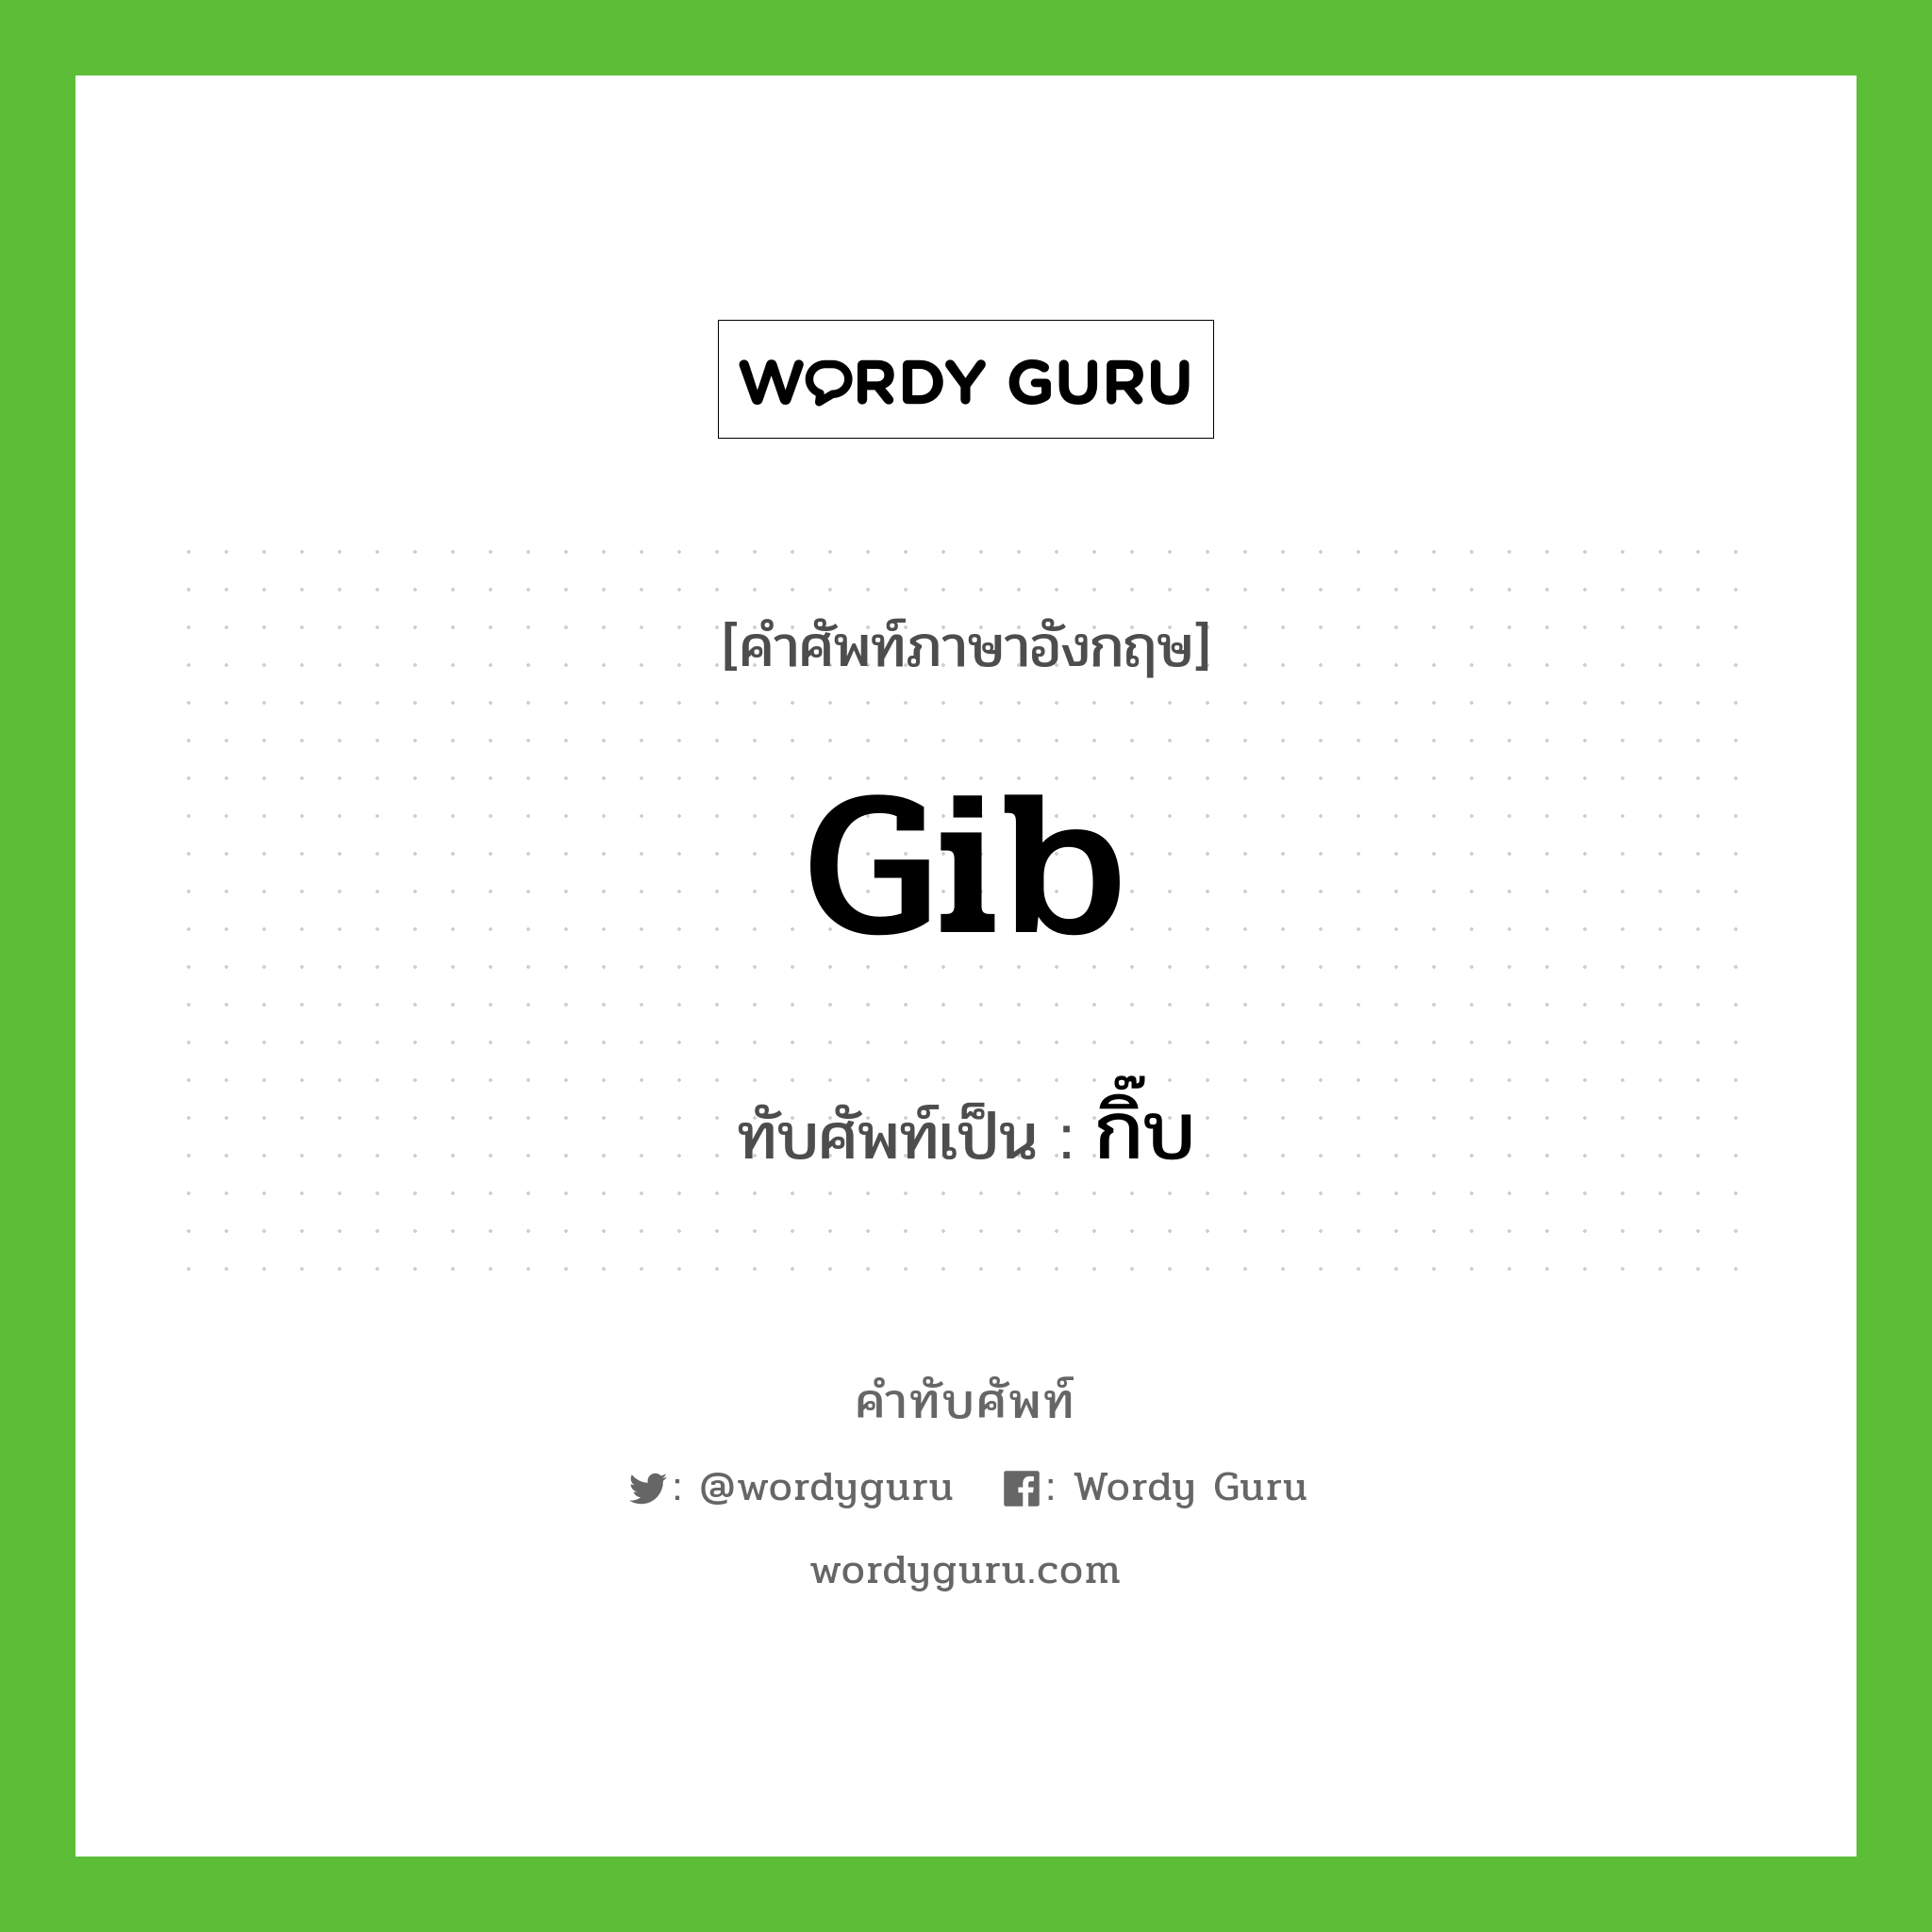 gib เขียนเป็นคำไทยว่าอะไร?, คำศัพท์ภาษาอังกฤษ gib ทับศัพท์เป็น กิ๊บ